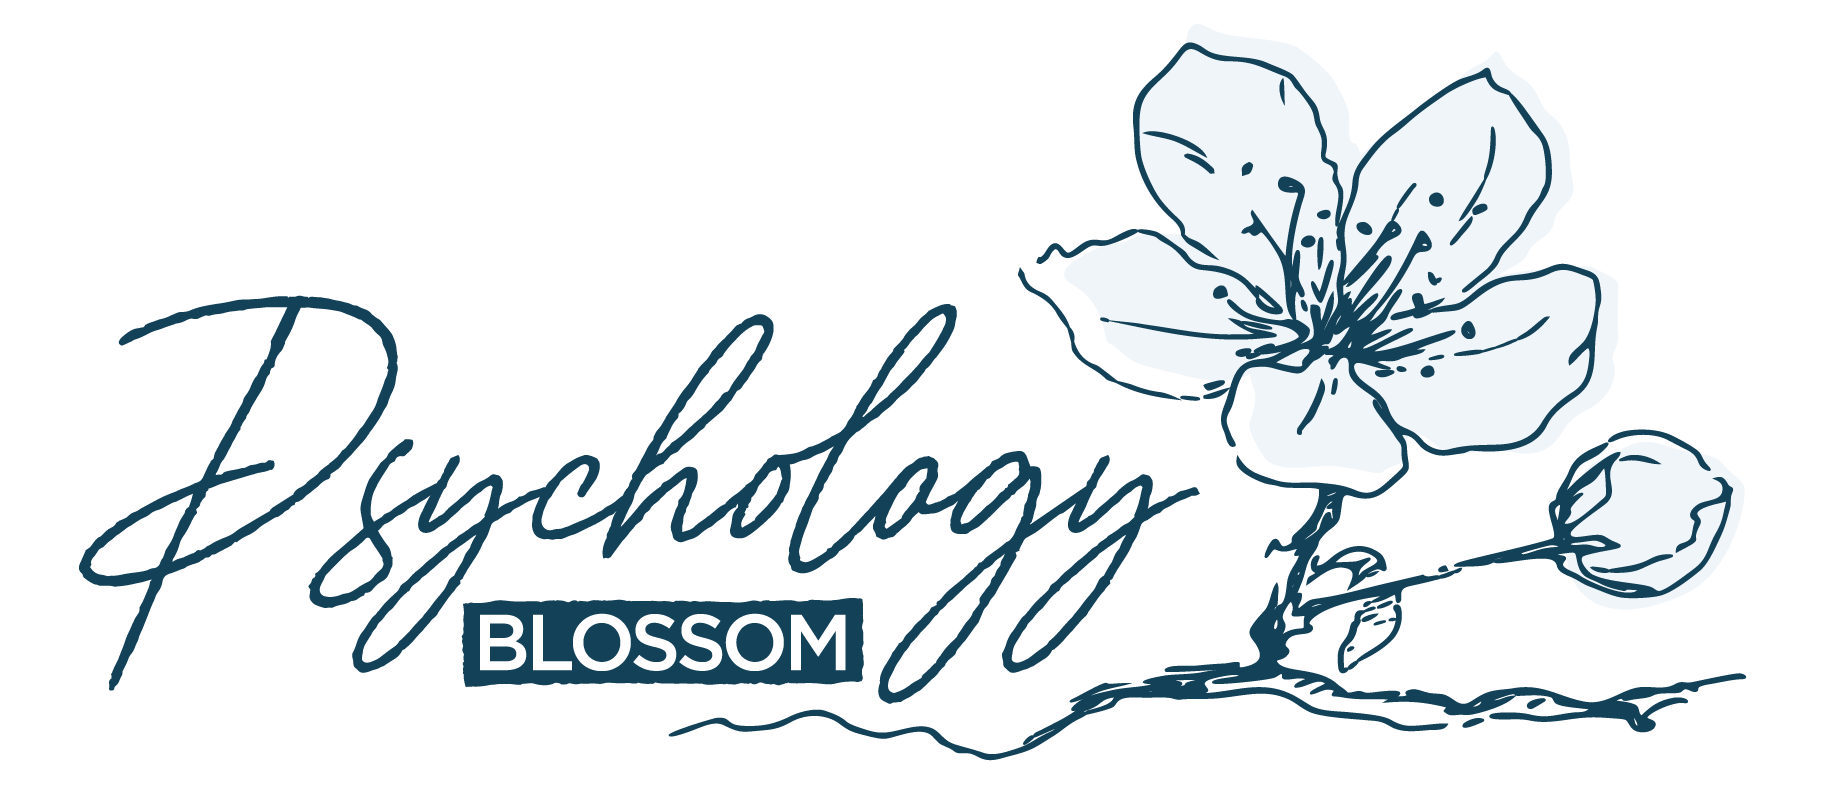 PsychologyBlossom_Logos-04